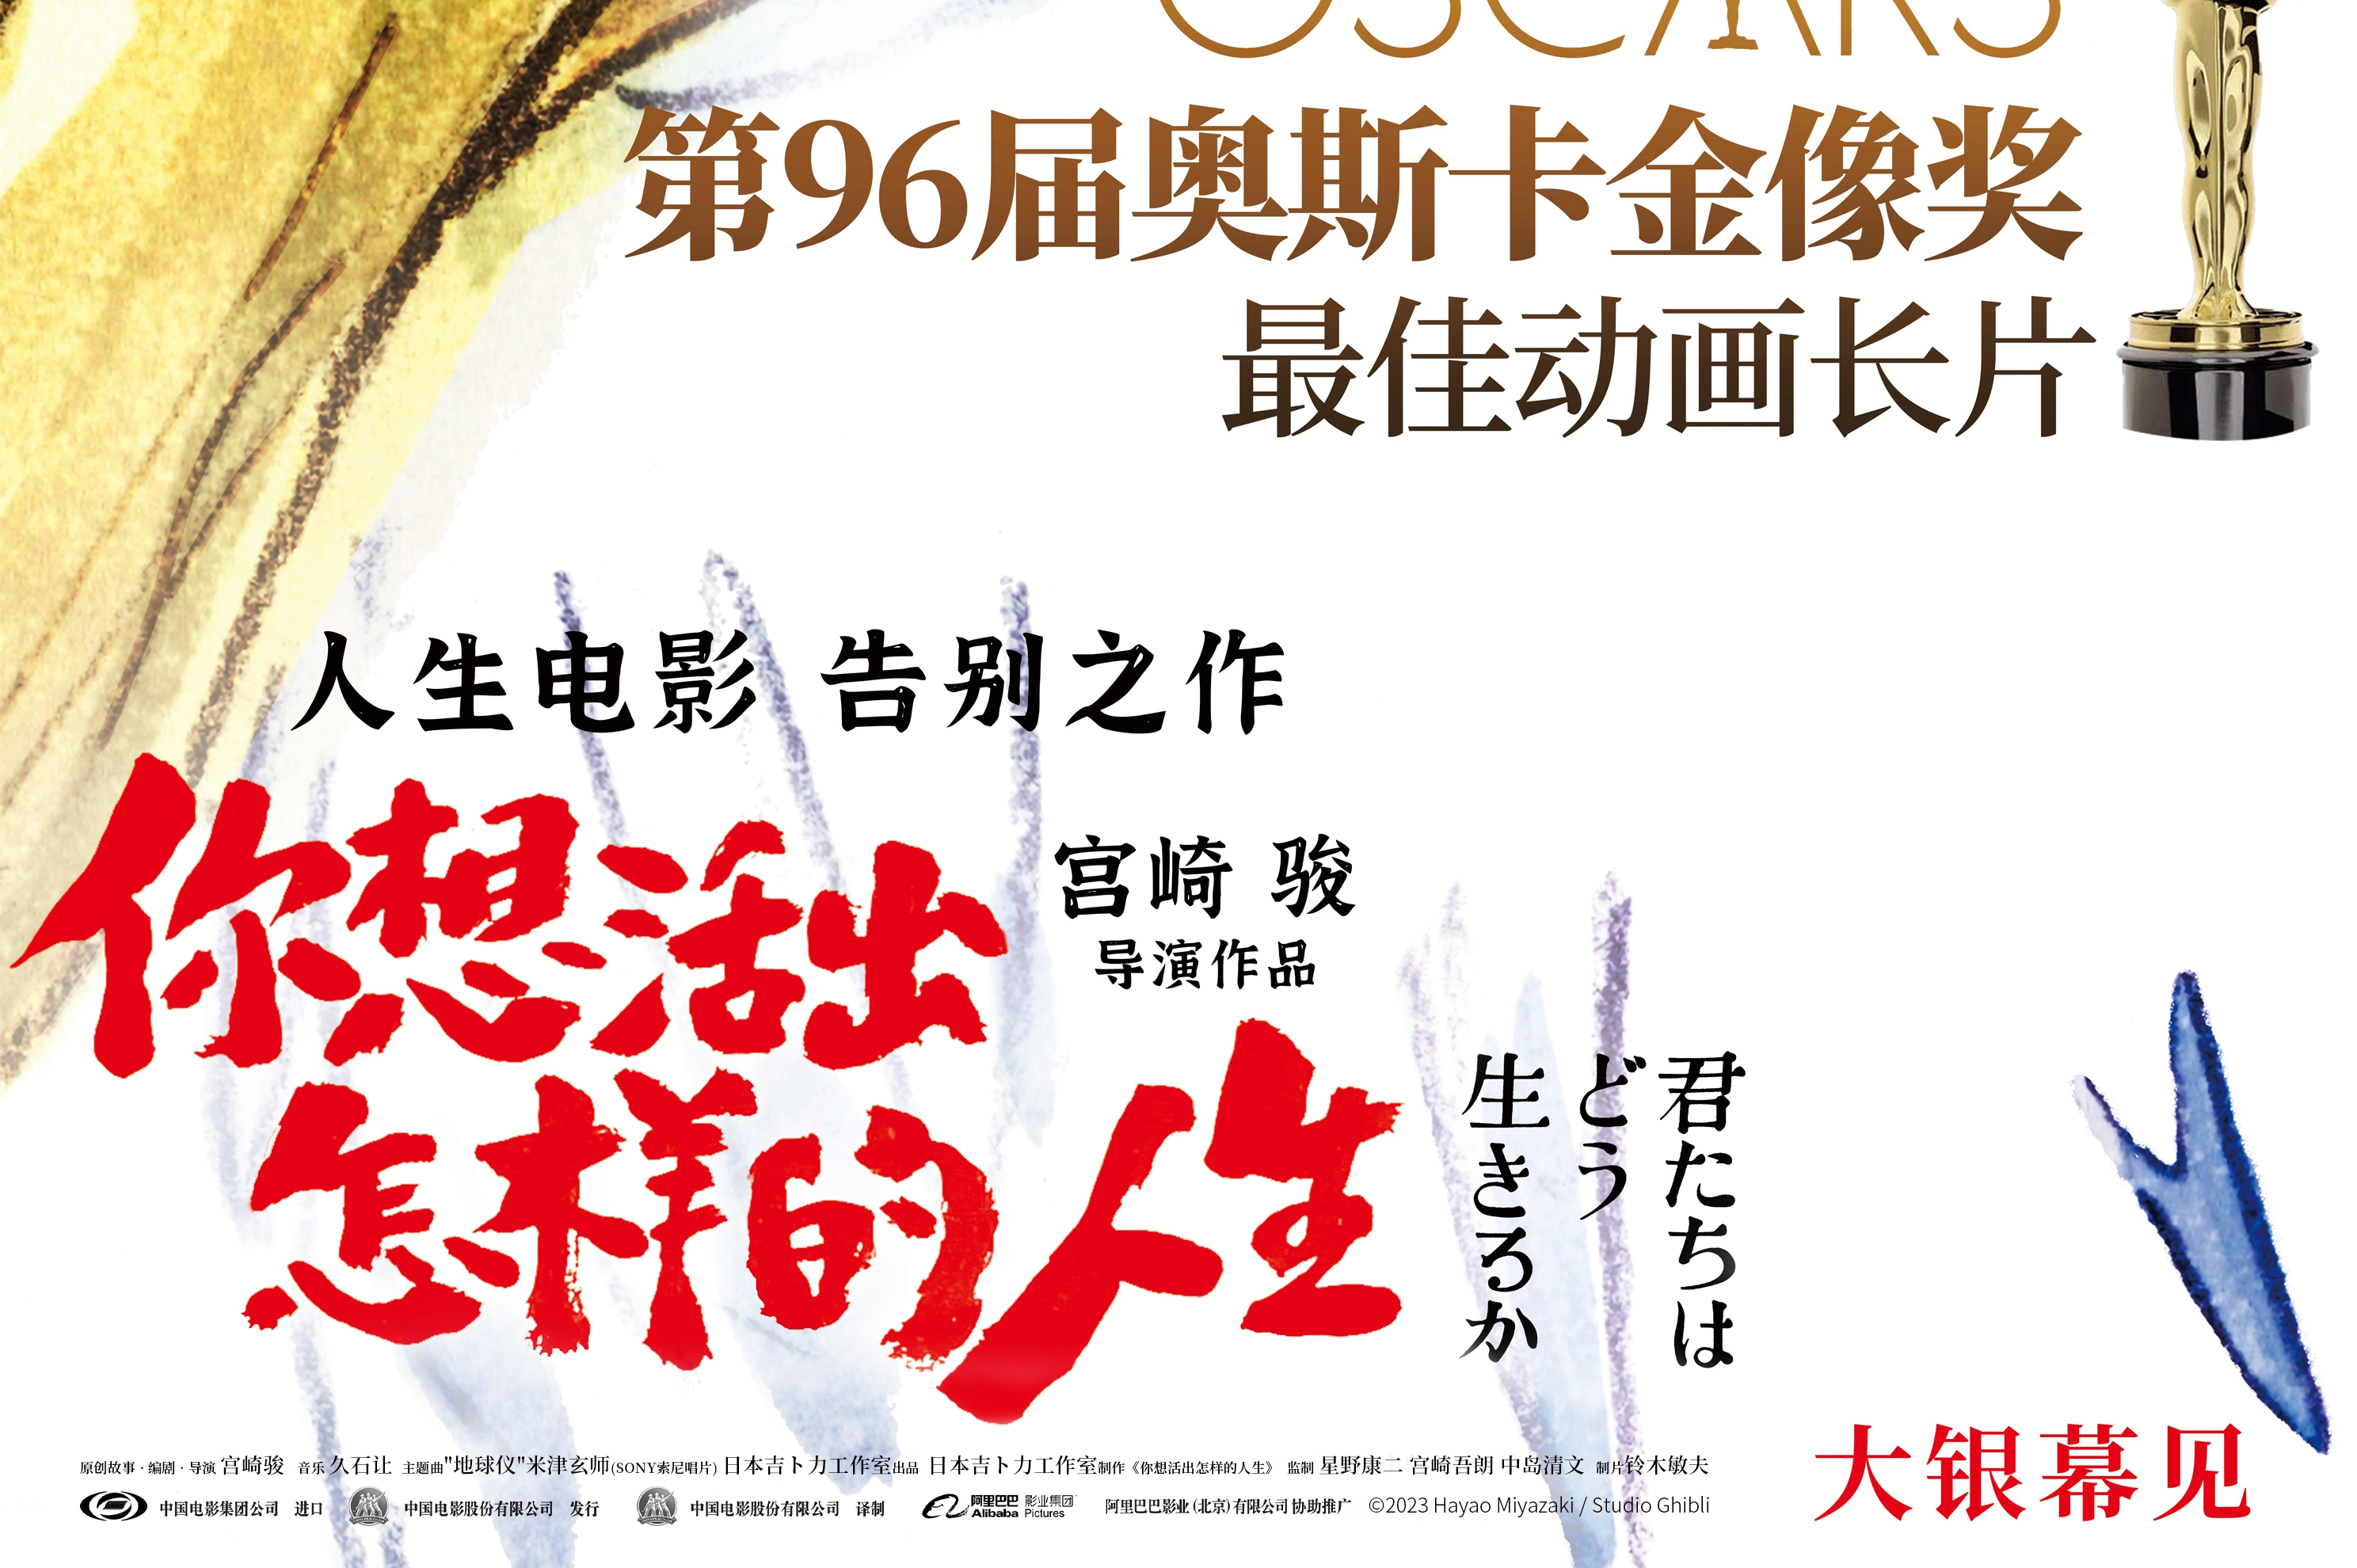  宫崎骏《你想活出怎样的人生》获奥斯卡最佳动画长片，宣布引进中国内地